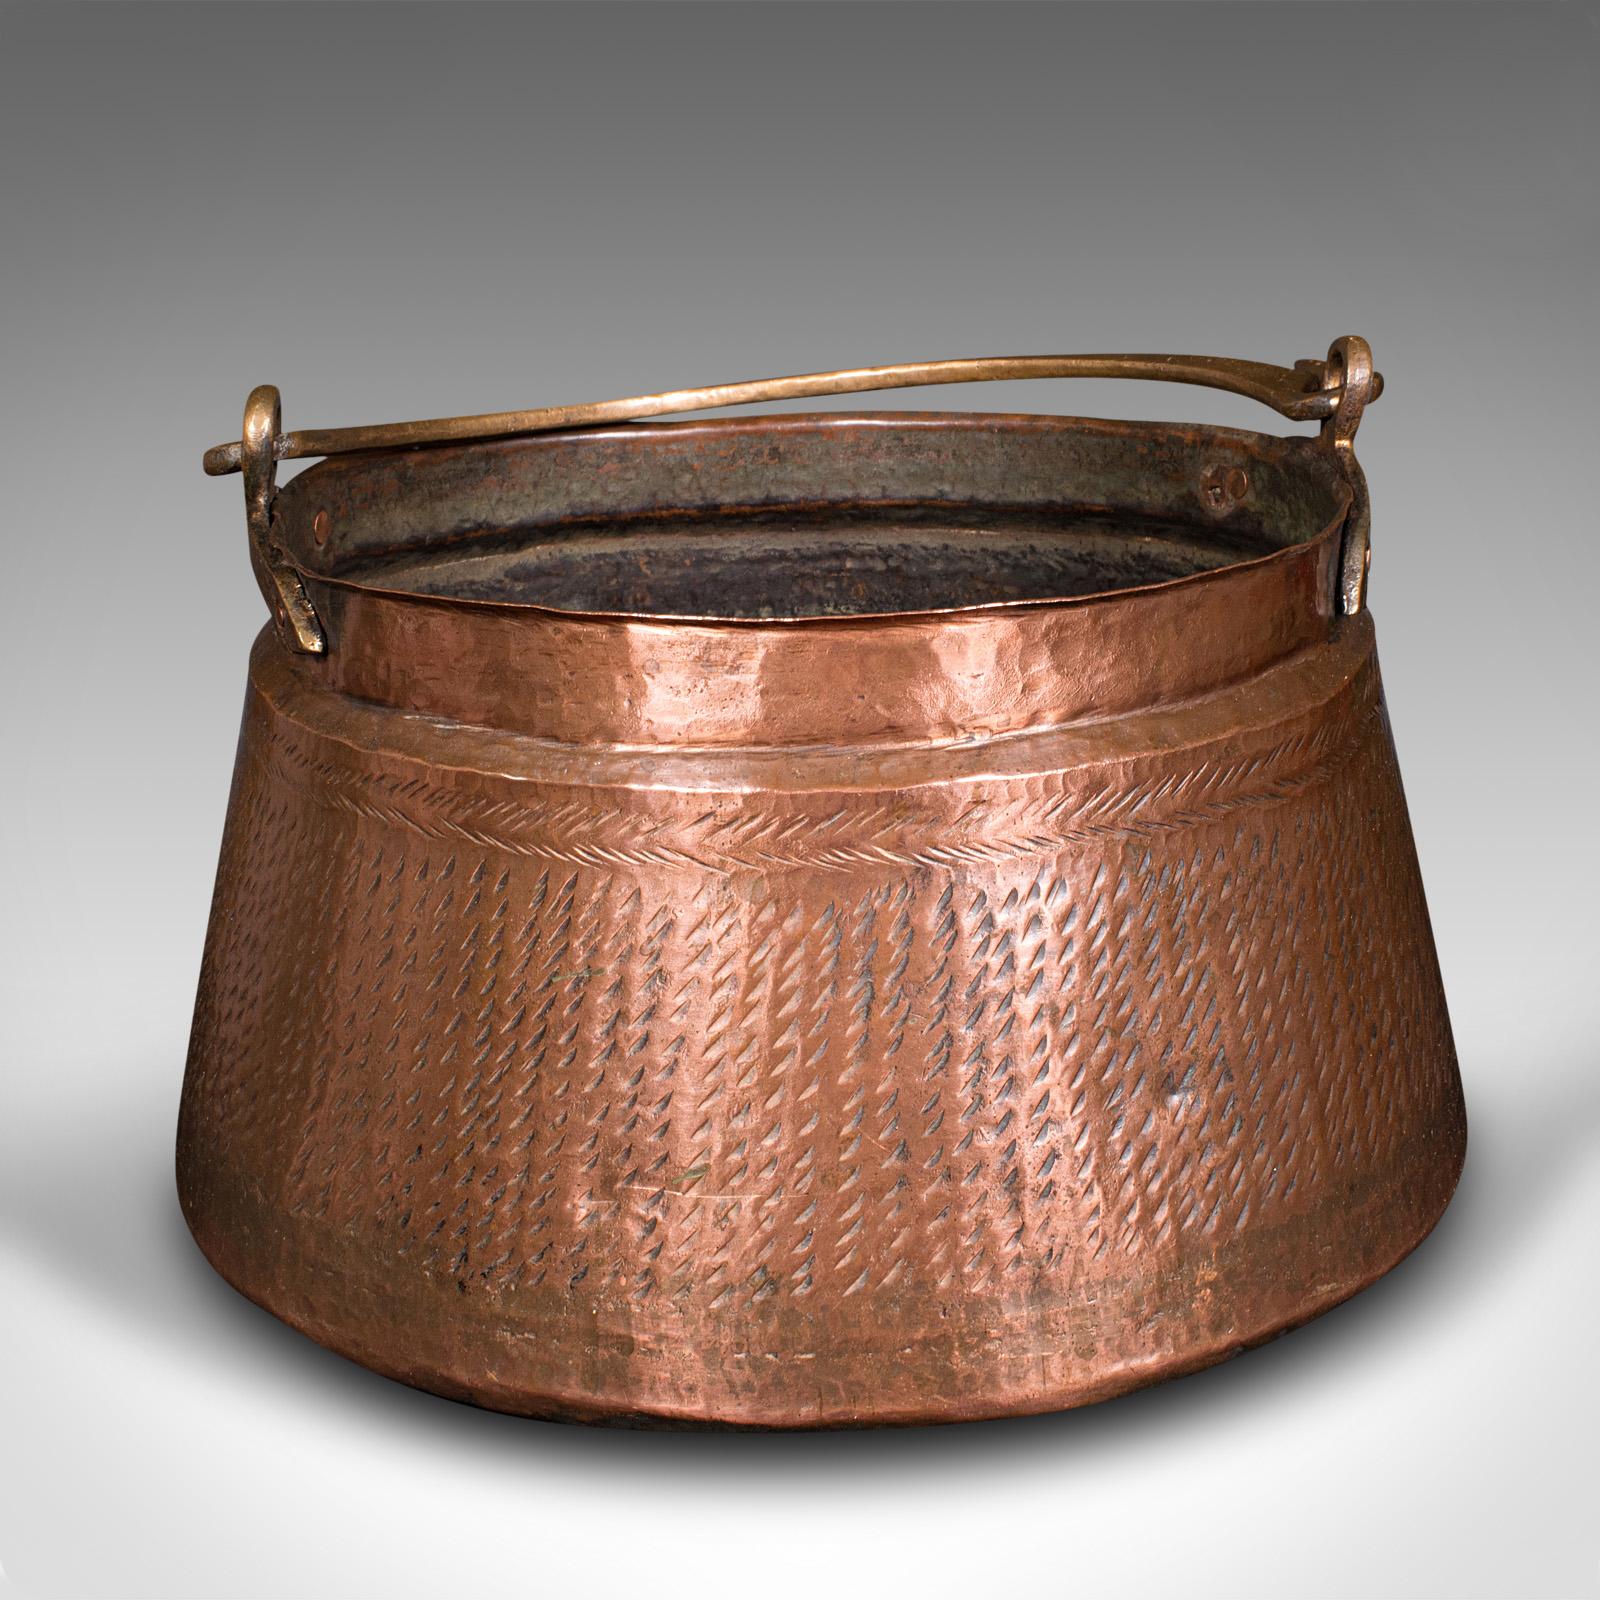 Dies ist ein antiker Brennstoffkorb für den Kamin. Ein indischer Daal-Topf mit Kupfer- und Bronzegriff aus der frühen viktorianischen Periode, um 1850.

Ansprechend originelle Pfanne, ideal für die Aufbewahrung vor dem Kamin
Zeigt eine